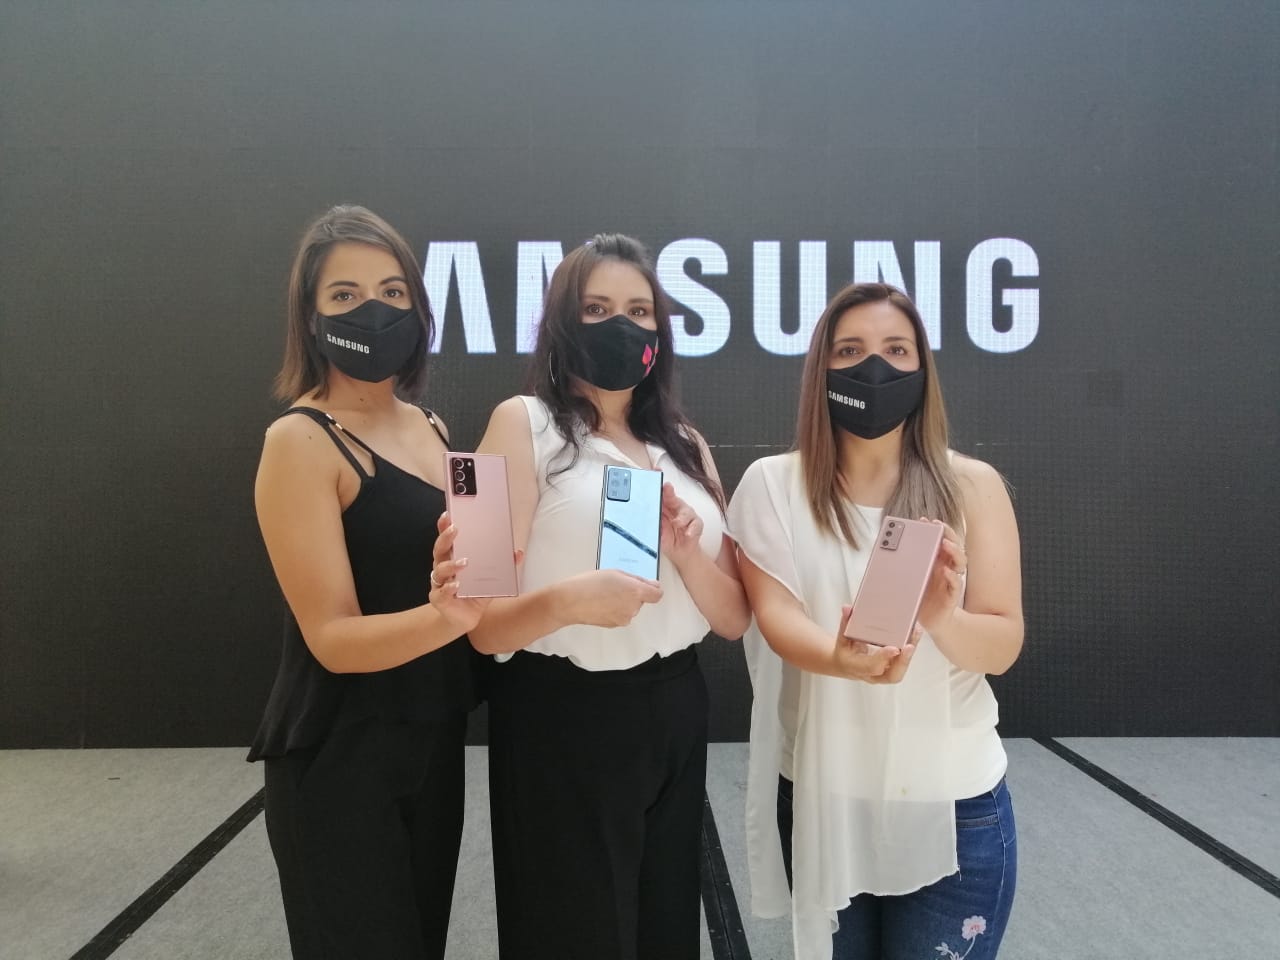 Samsung en las fiestas de fin de año presenta dos campañas para las familias bolivianas